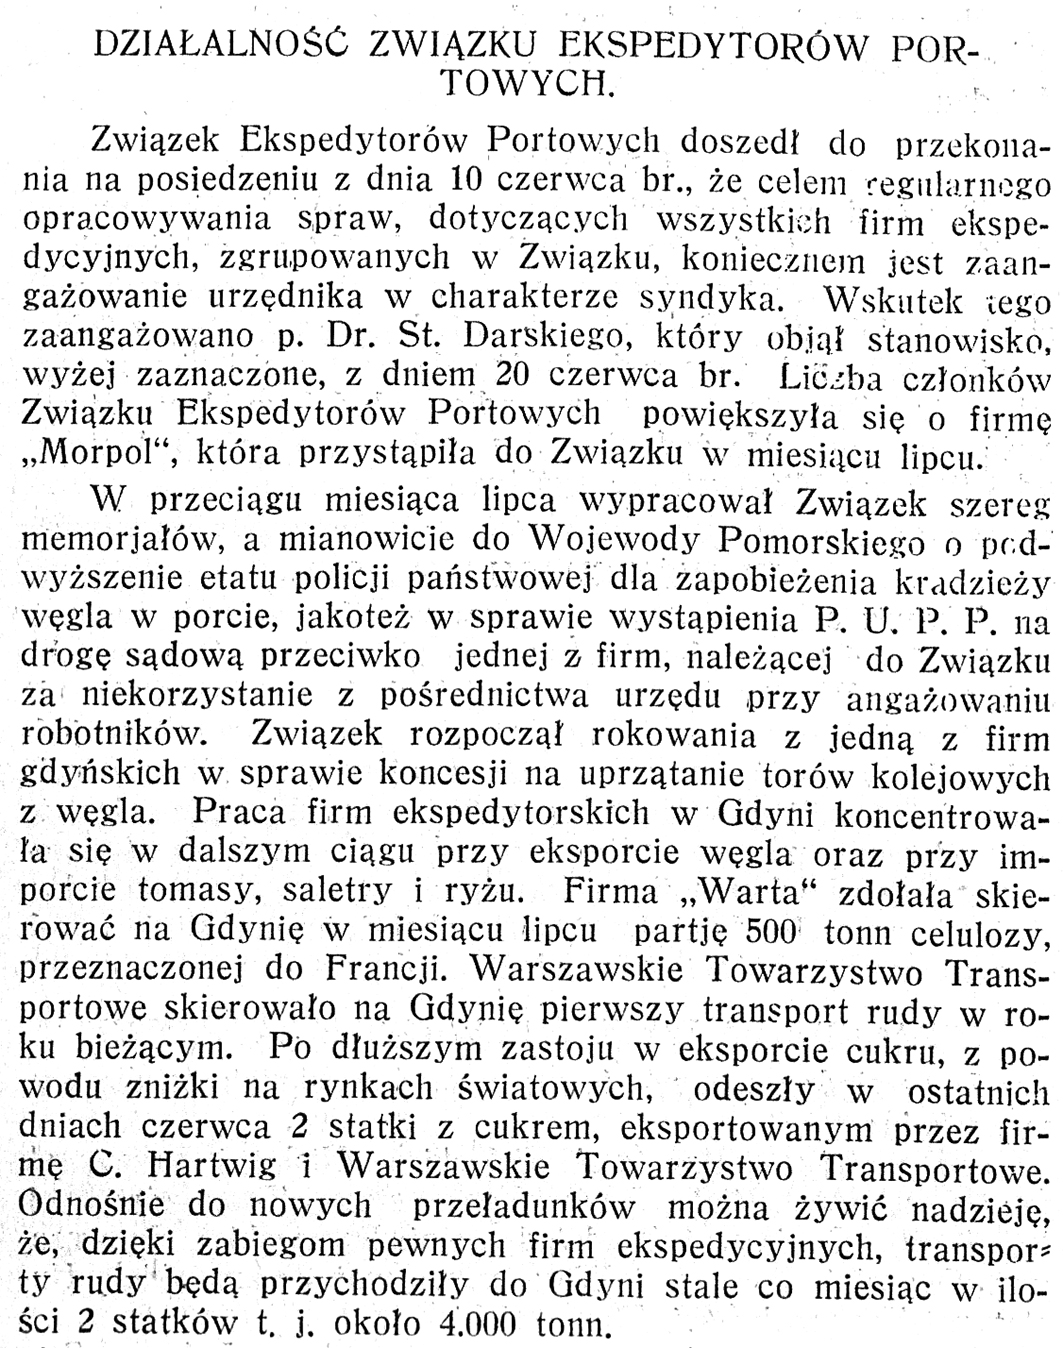 Działalność związku ekspedytorów portowych // Pomorze i Gdynia: dwutygodnik gospodarczy. - 1929, nr 1, s. 1